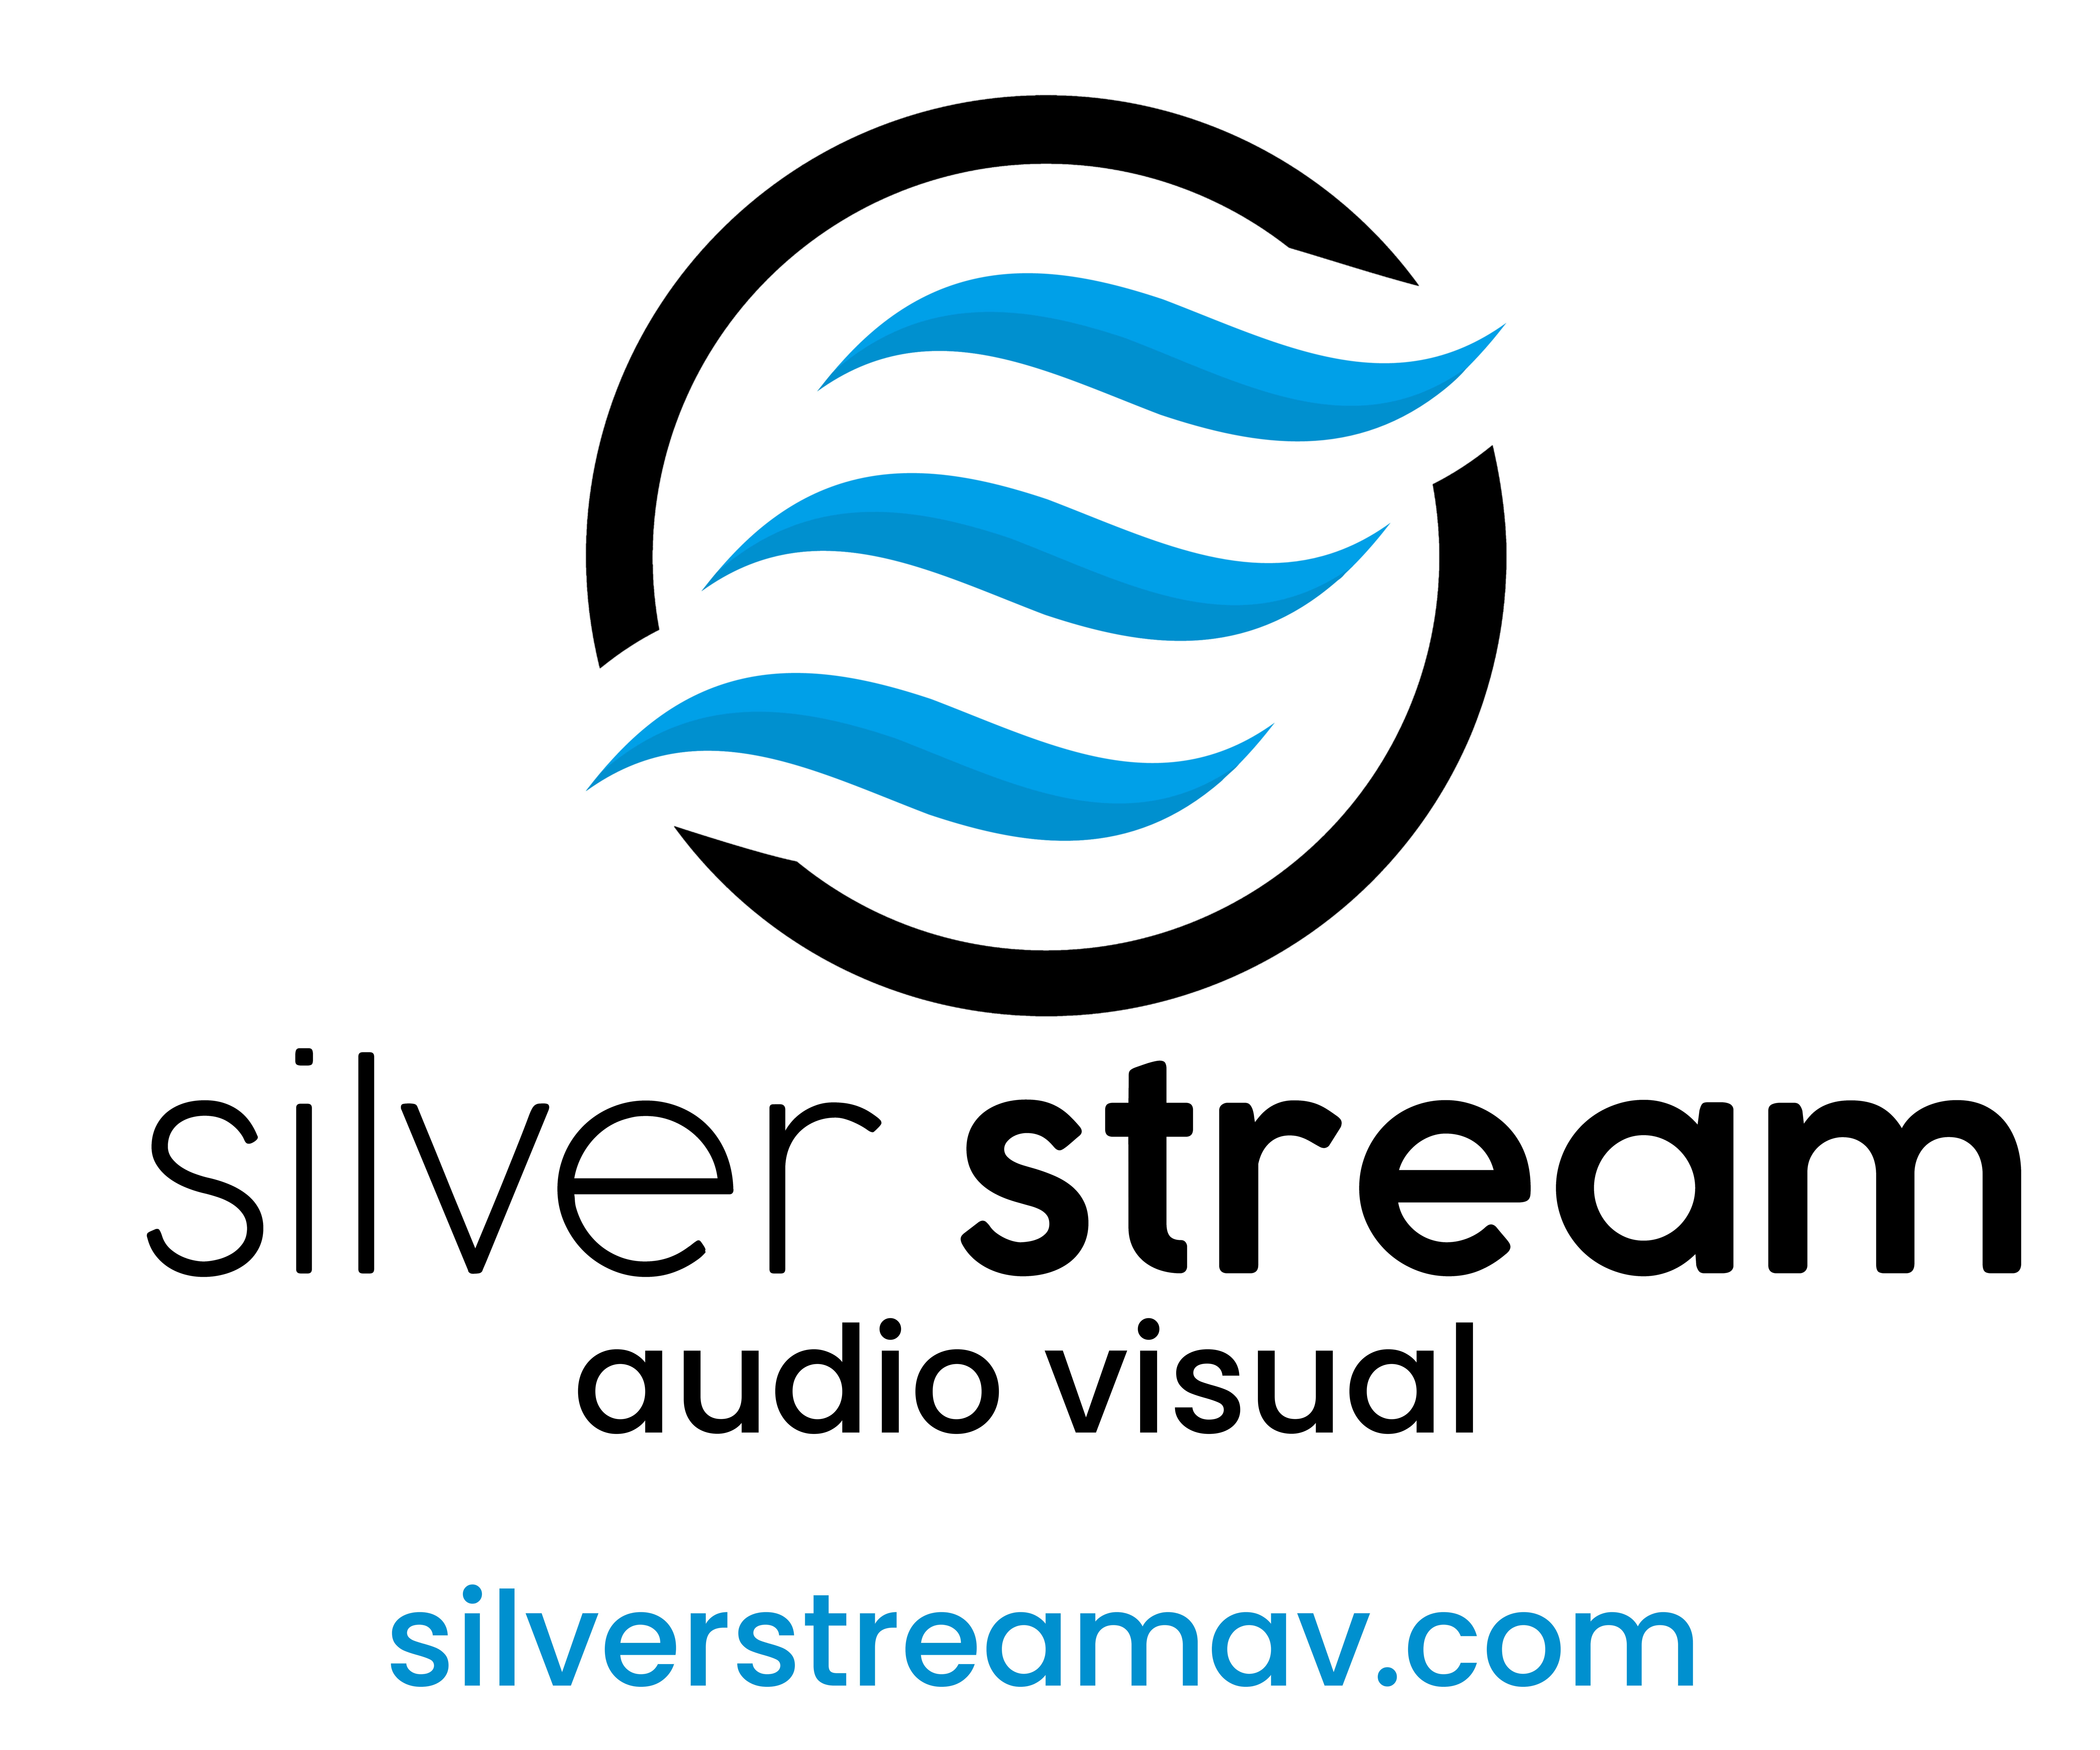 Silver Stream Audio Visual